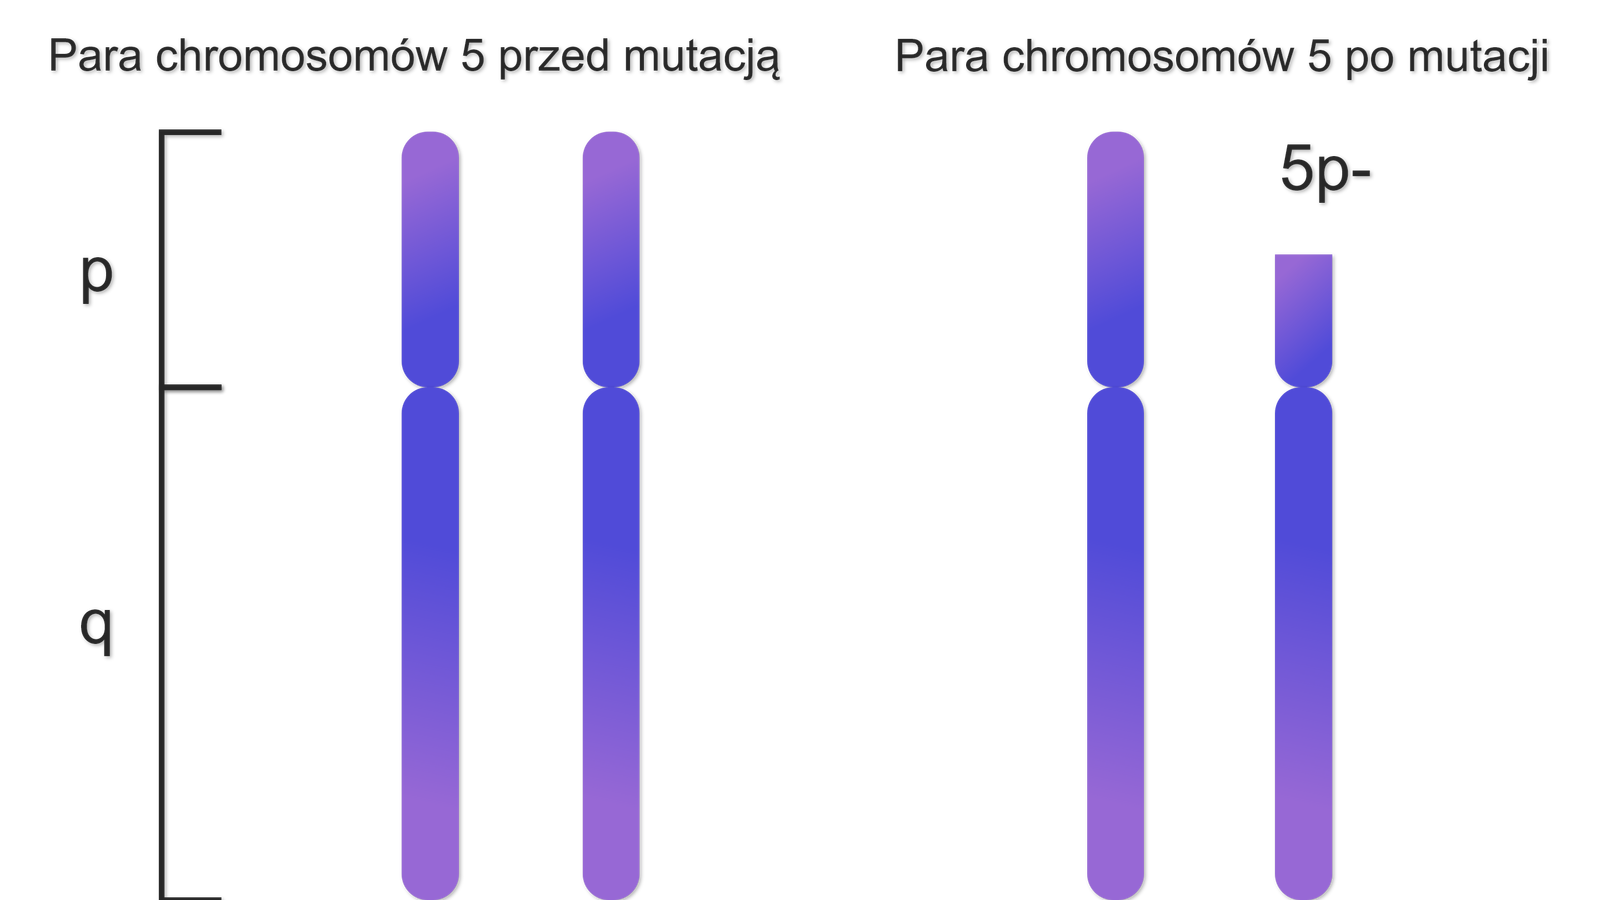 Grafika przedstawia dwa zestawienia par chromosomów. Chromosomy składają się z części krótszej i dłuższej. Obok nich znajduje się klamra z oznaczeniami. P dla części krótszej chromosomu, q dla części dłuższej chromosomu. Rysunek po lewej stronie prezentuje parę chromosomów 5 przed mutacją. Każdy z pary chromosomów jest złożony z elementu p i elementu q. Rysunek po prawej stronie prezentuje parę chromosomów 5 po mutacji. Każdy z pary chromosomów jest złożony z elementu p i elementu q, przy czym chromosom drugi ma skrócony element p o wartości 5p-.